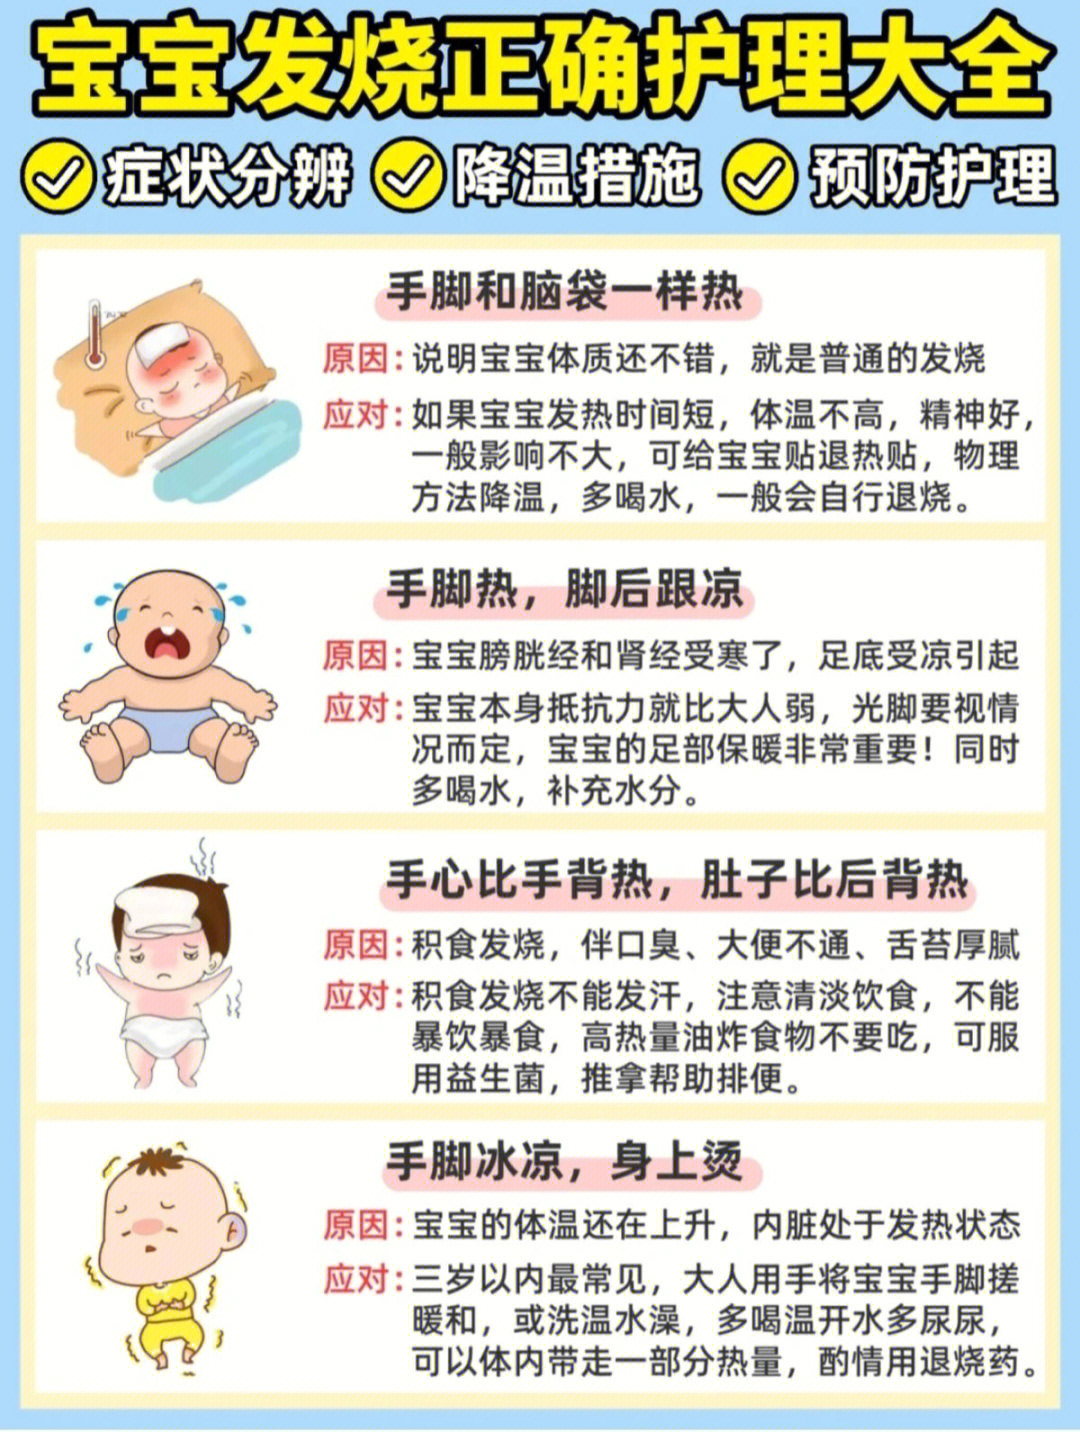 宝宝发烧不用慌症状分辨和正确应对方法